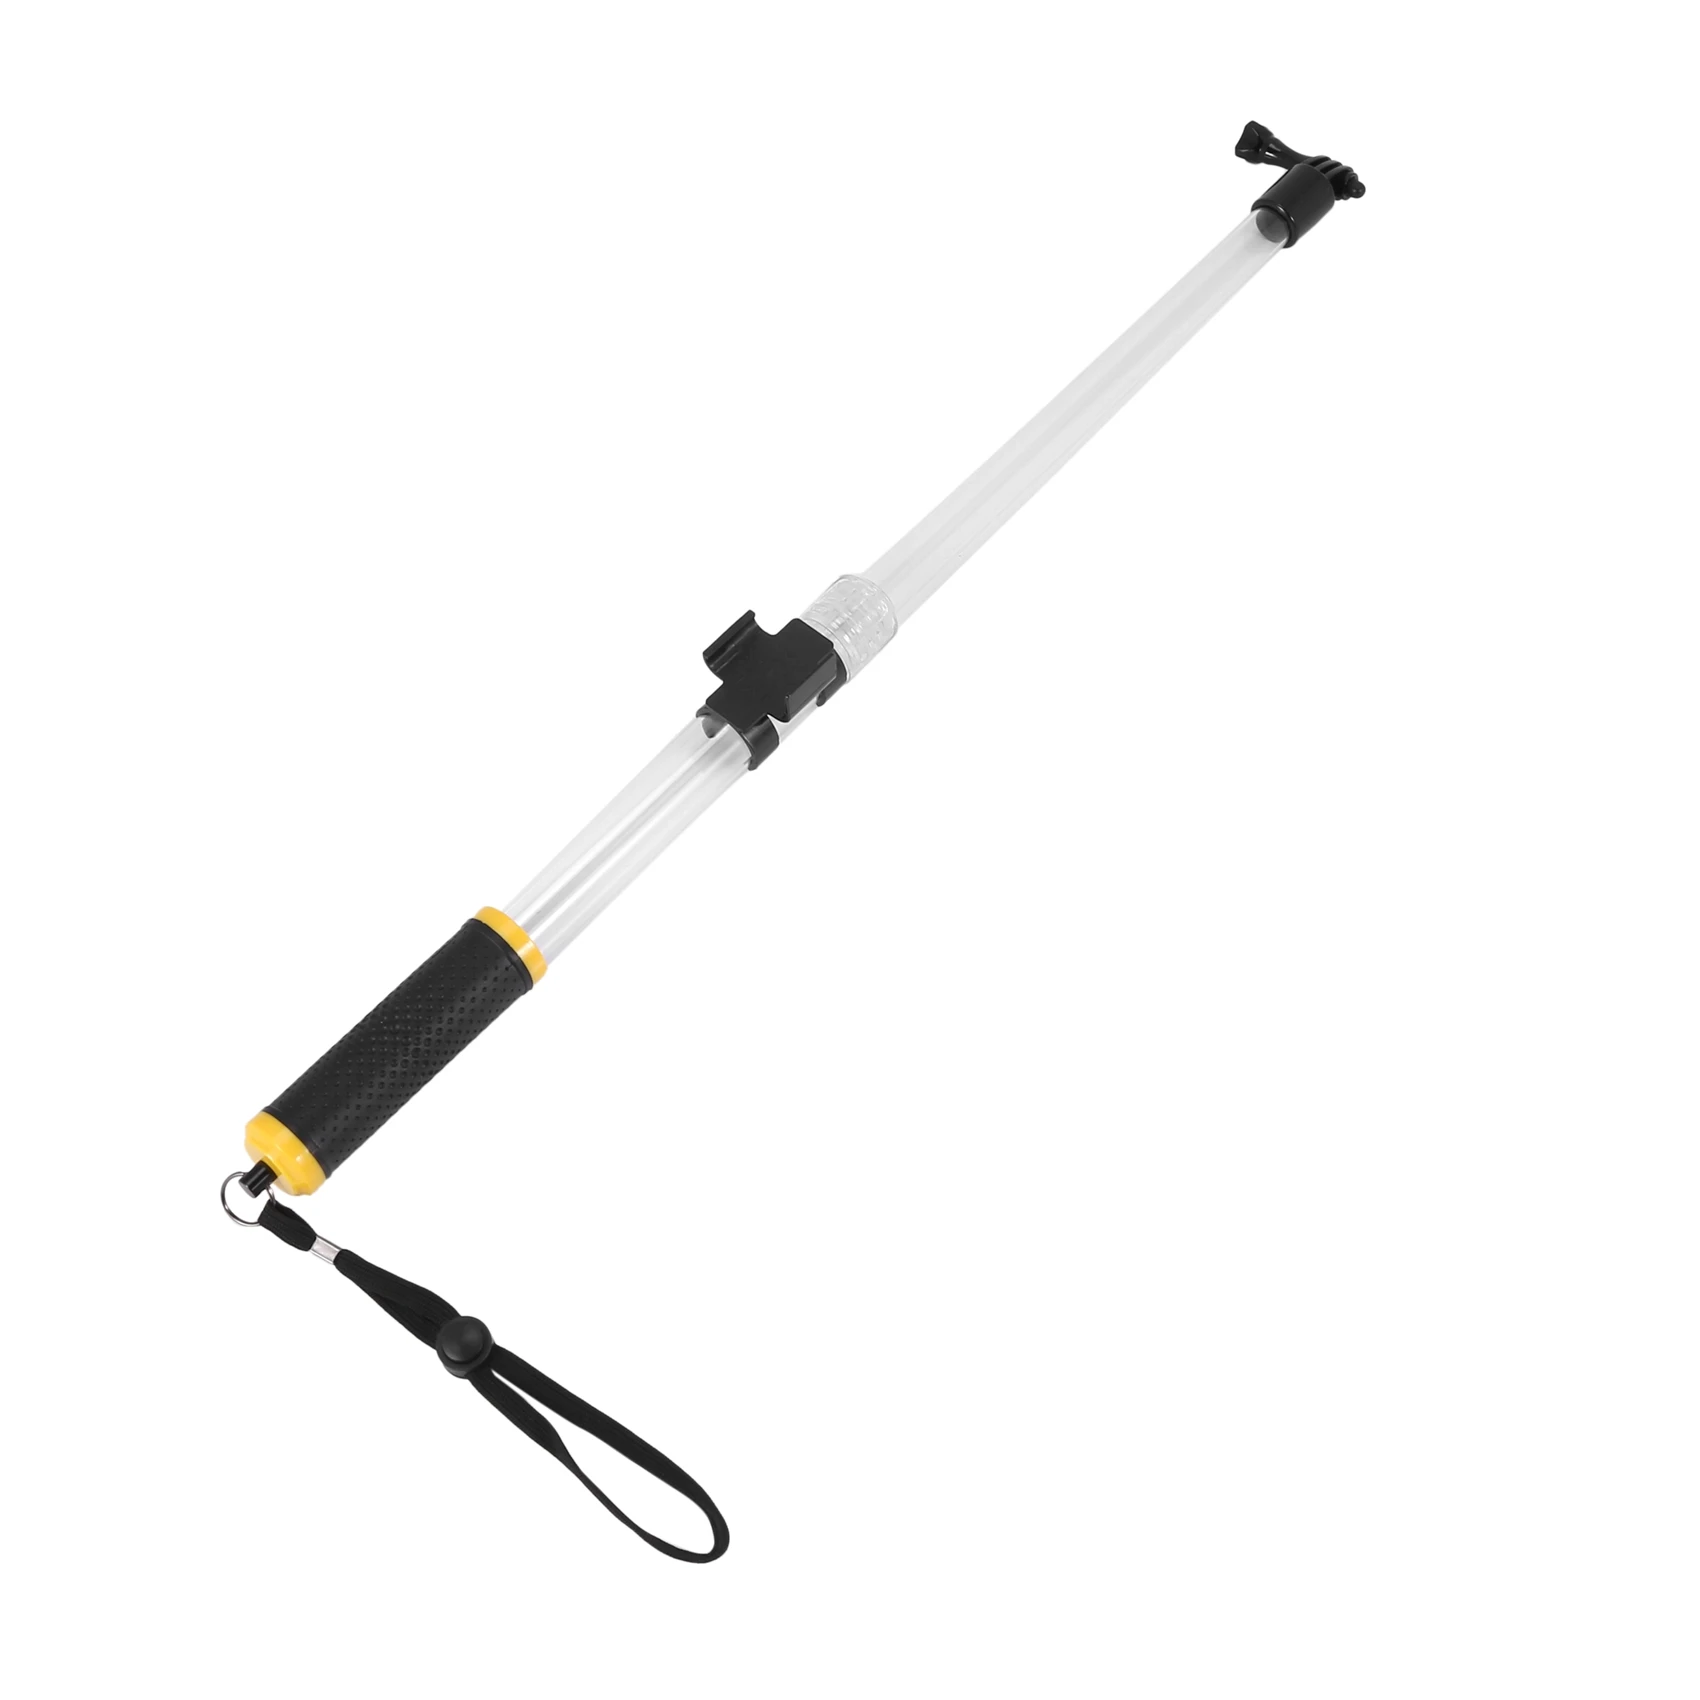 

Водонепроницаемая селфи-палка для выдвижной прозрачной плавающей палки для камер Hero, водонепроницаемая телескопическая ручка 14-24 дюйма